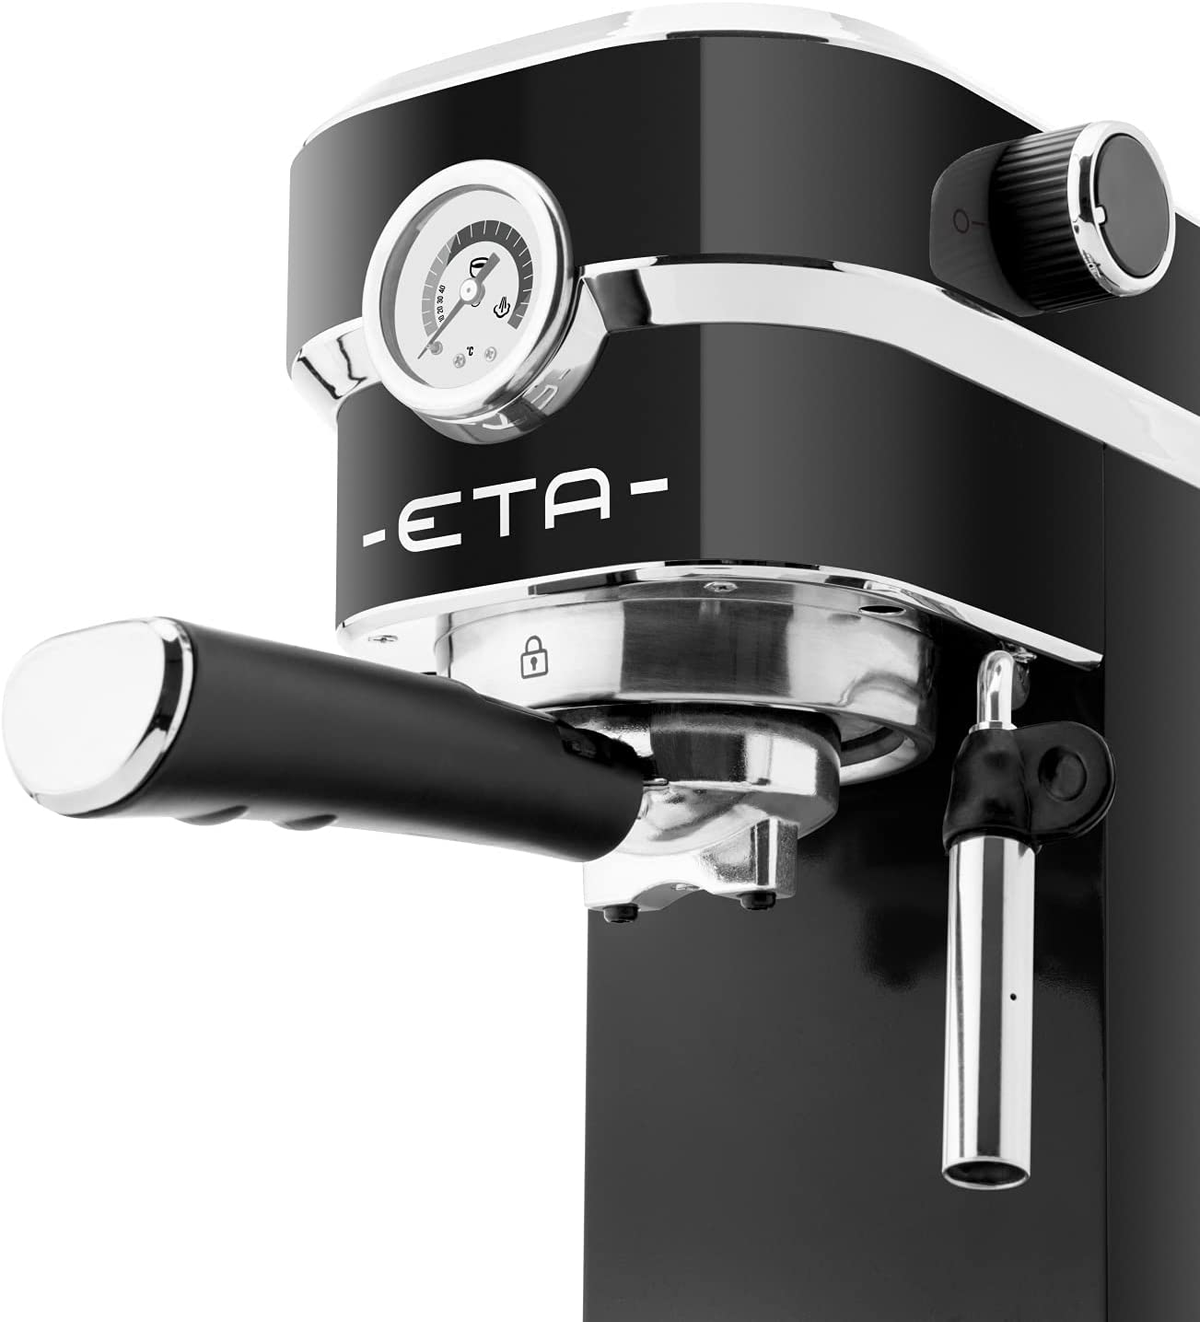 schwarz Storio Espressomaschine ETA